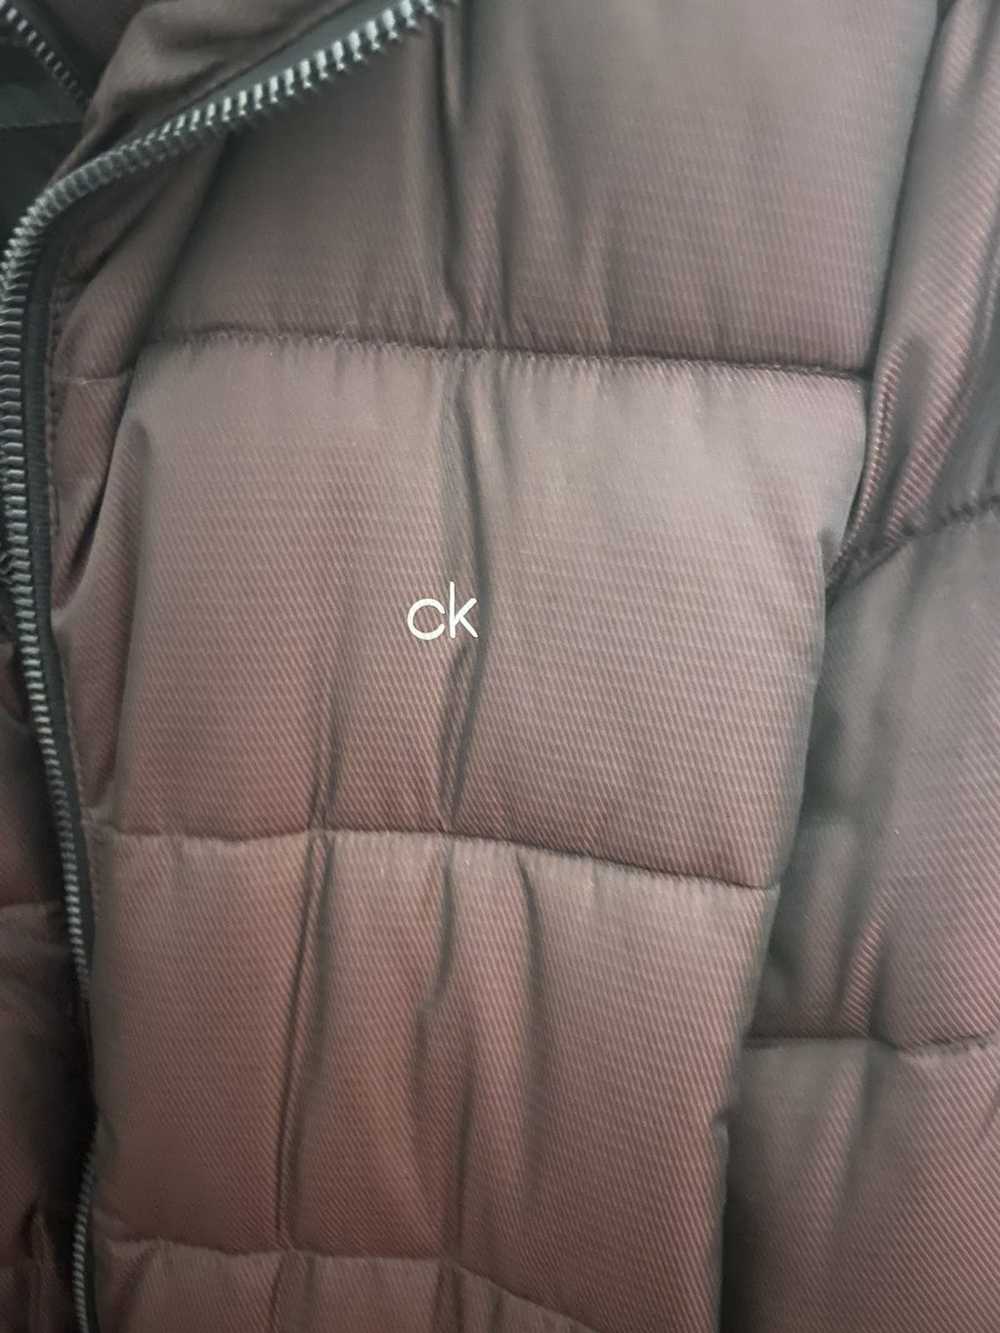 Calvin Klein Calvin Klein puff jacket - image 2